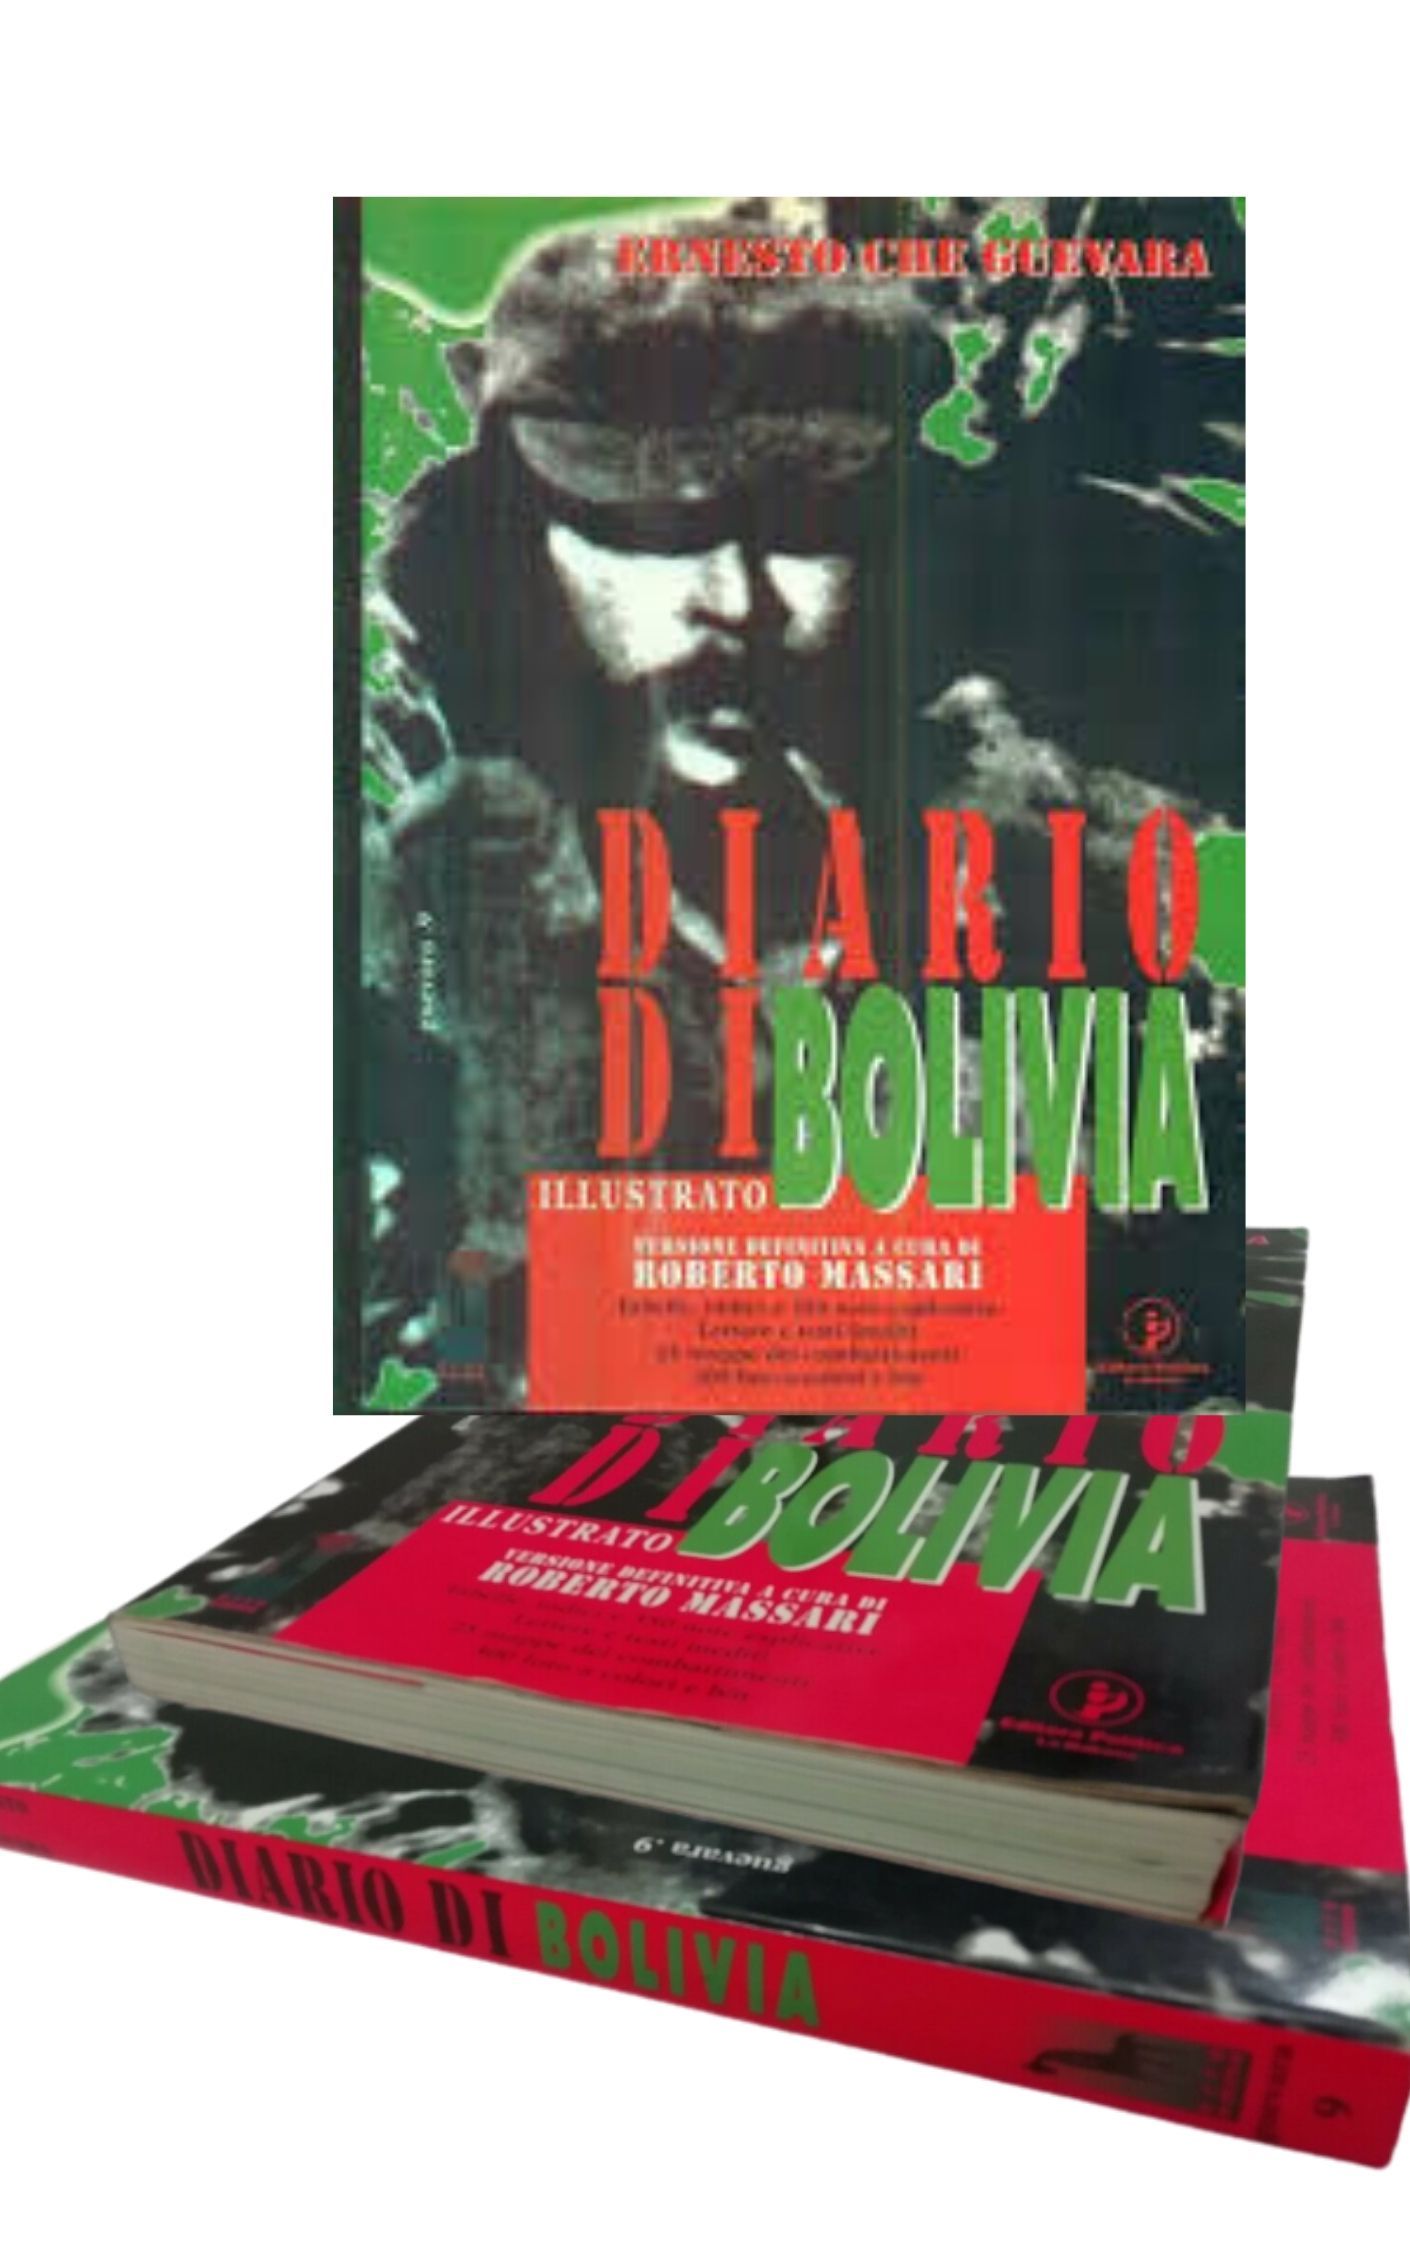 “Diario di Bolivia illustrato” di Ernesto Che Guevara in fumetteria